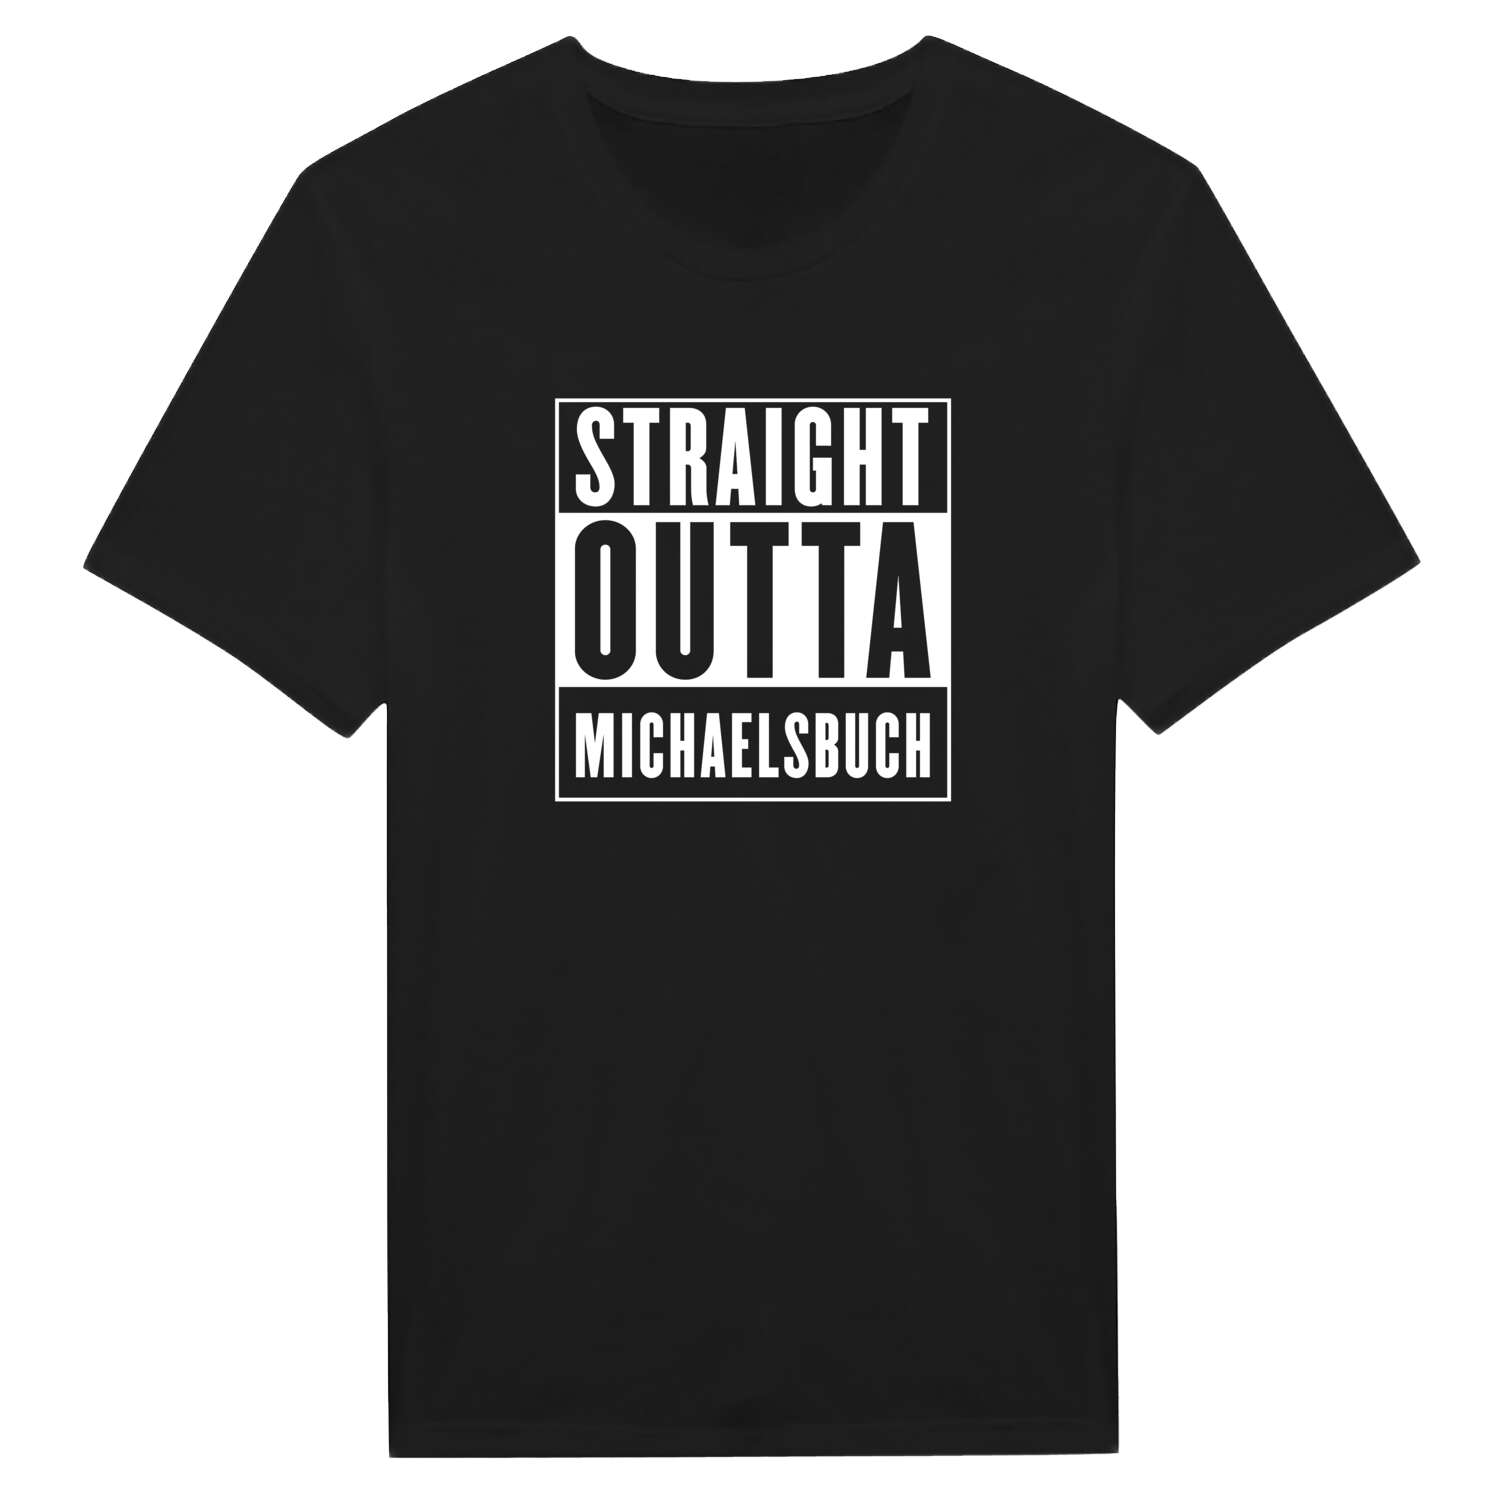 Michaelsbuch T-Shirt »Straight Outta«